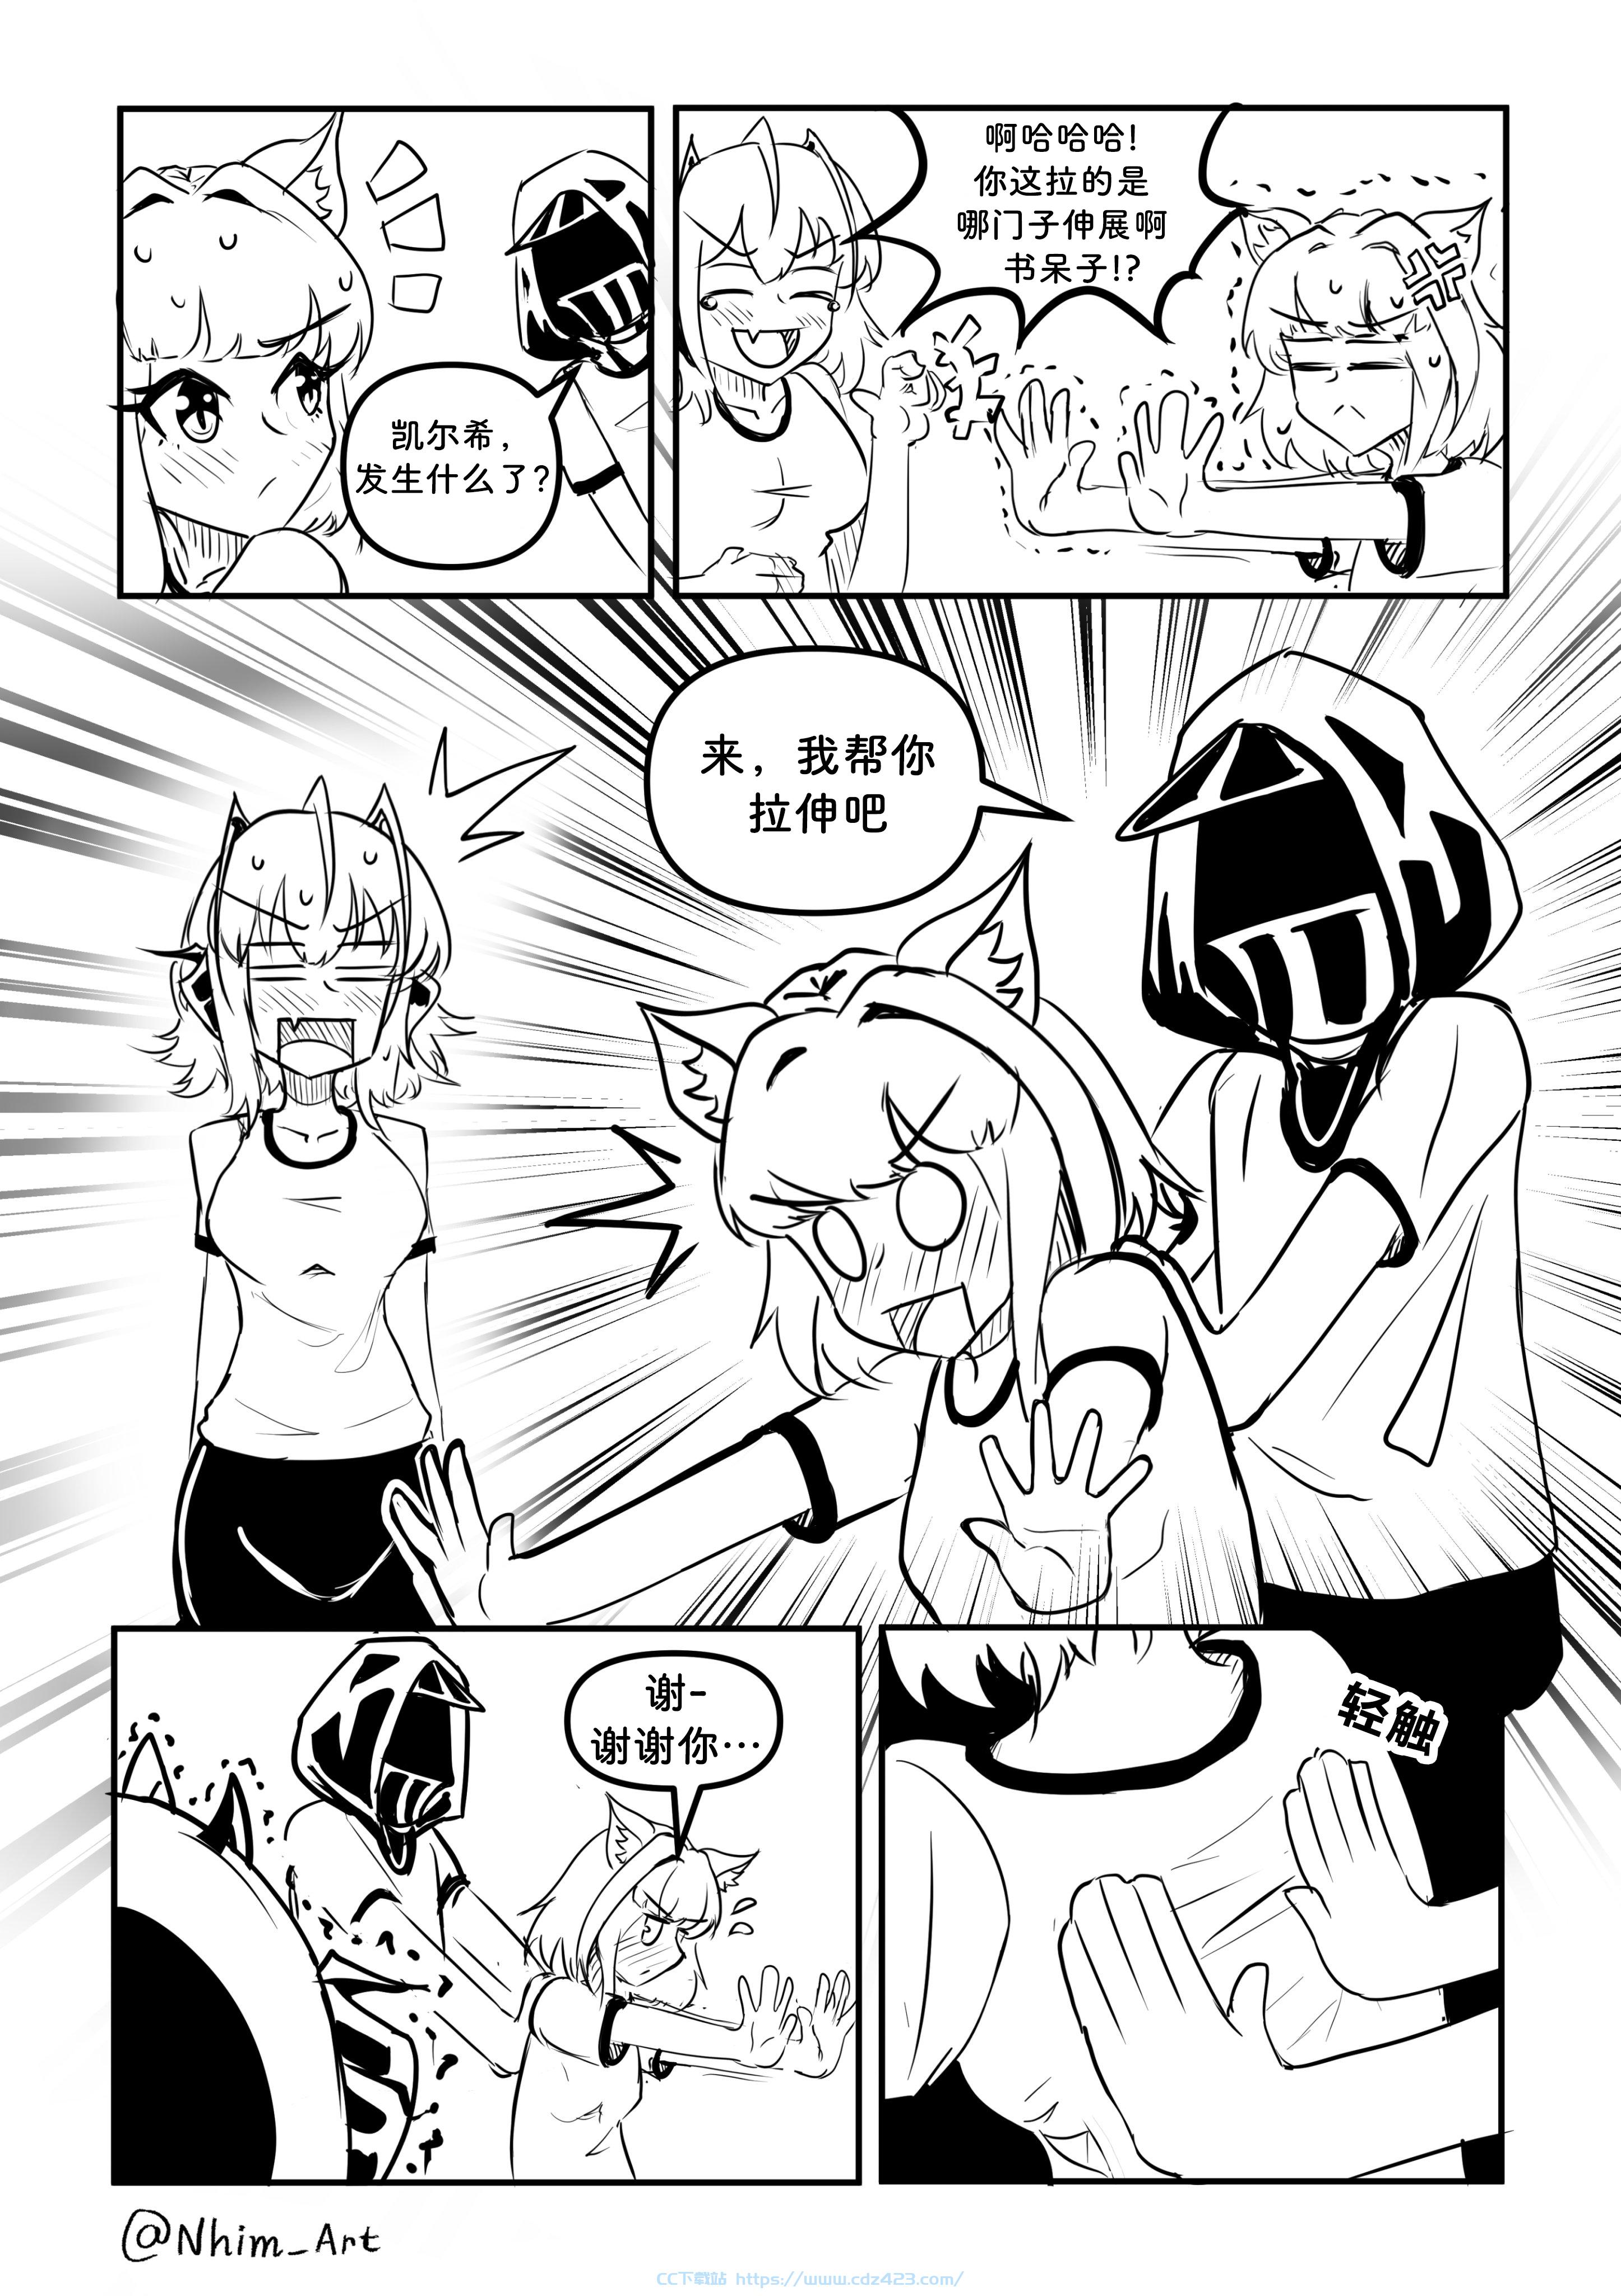 [漫画] 【明日方舟】Nhim老师的作品合集 4